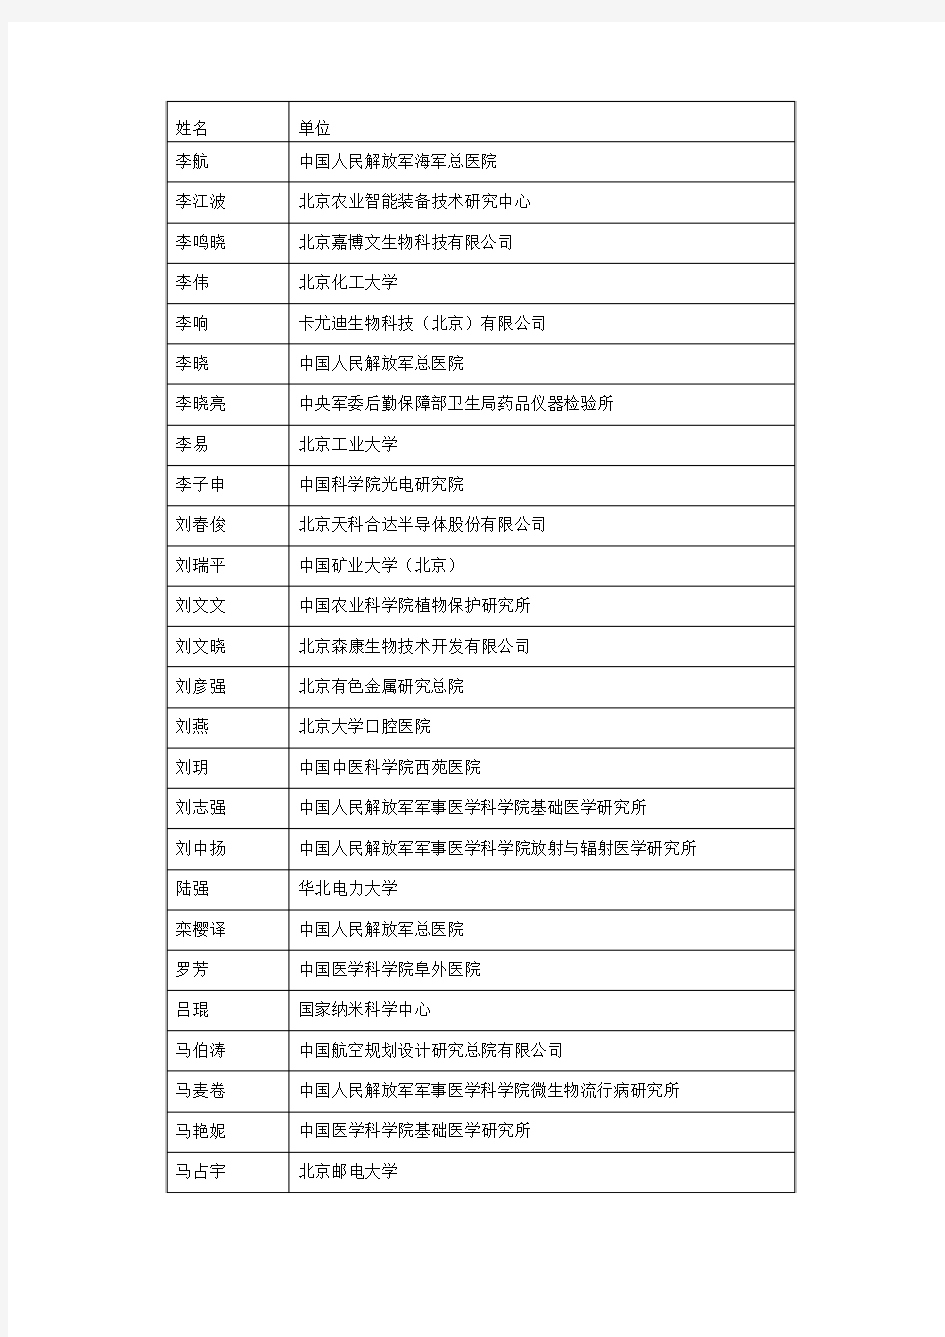 2017年度北京市科技新星计划拟入选人员名单公示